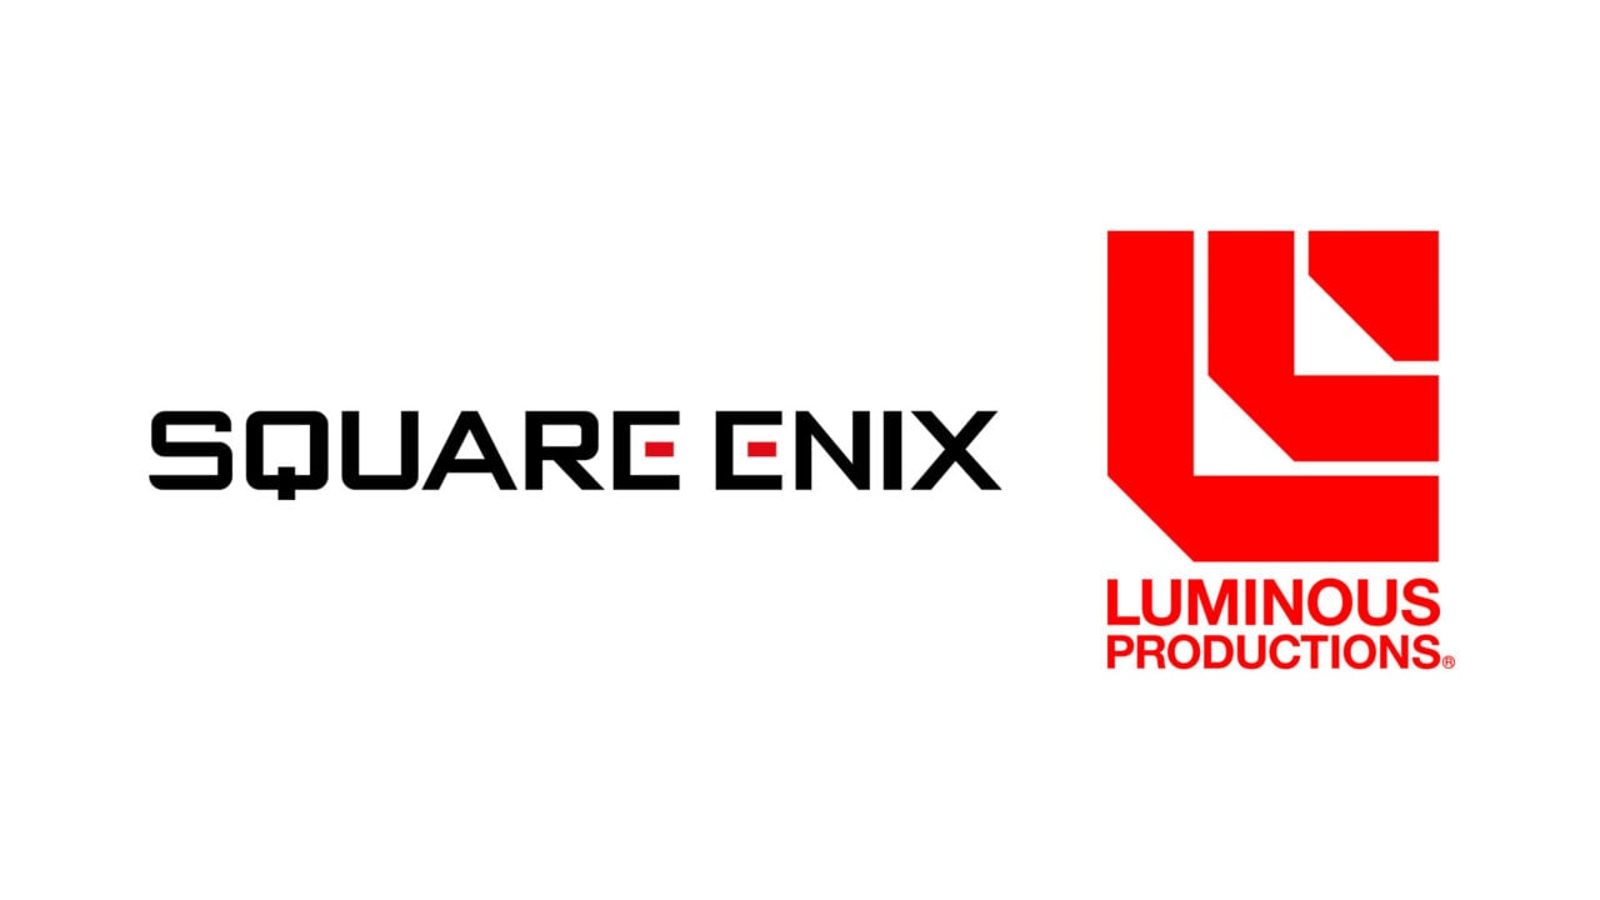 SQUARE ENIX  The Official SQUARE ENIX Website - Jogos